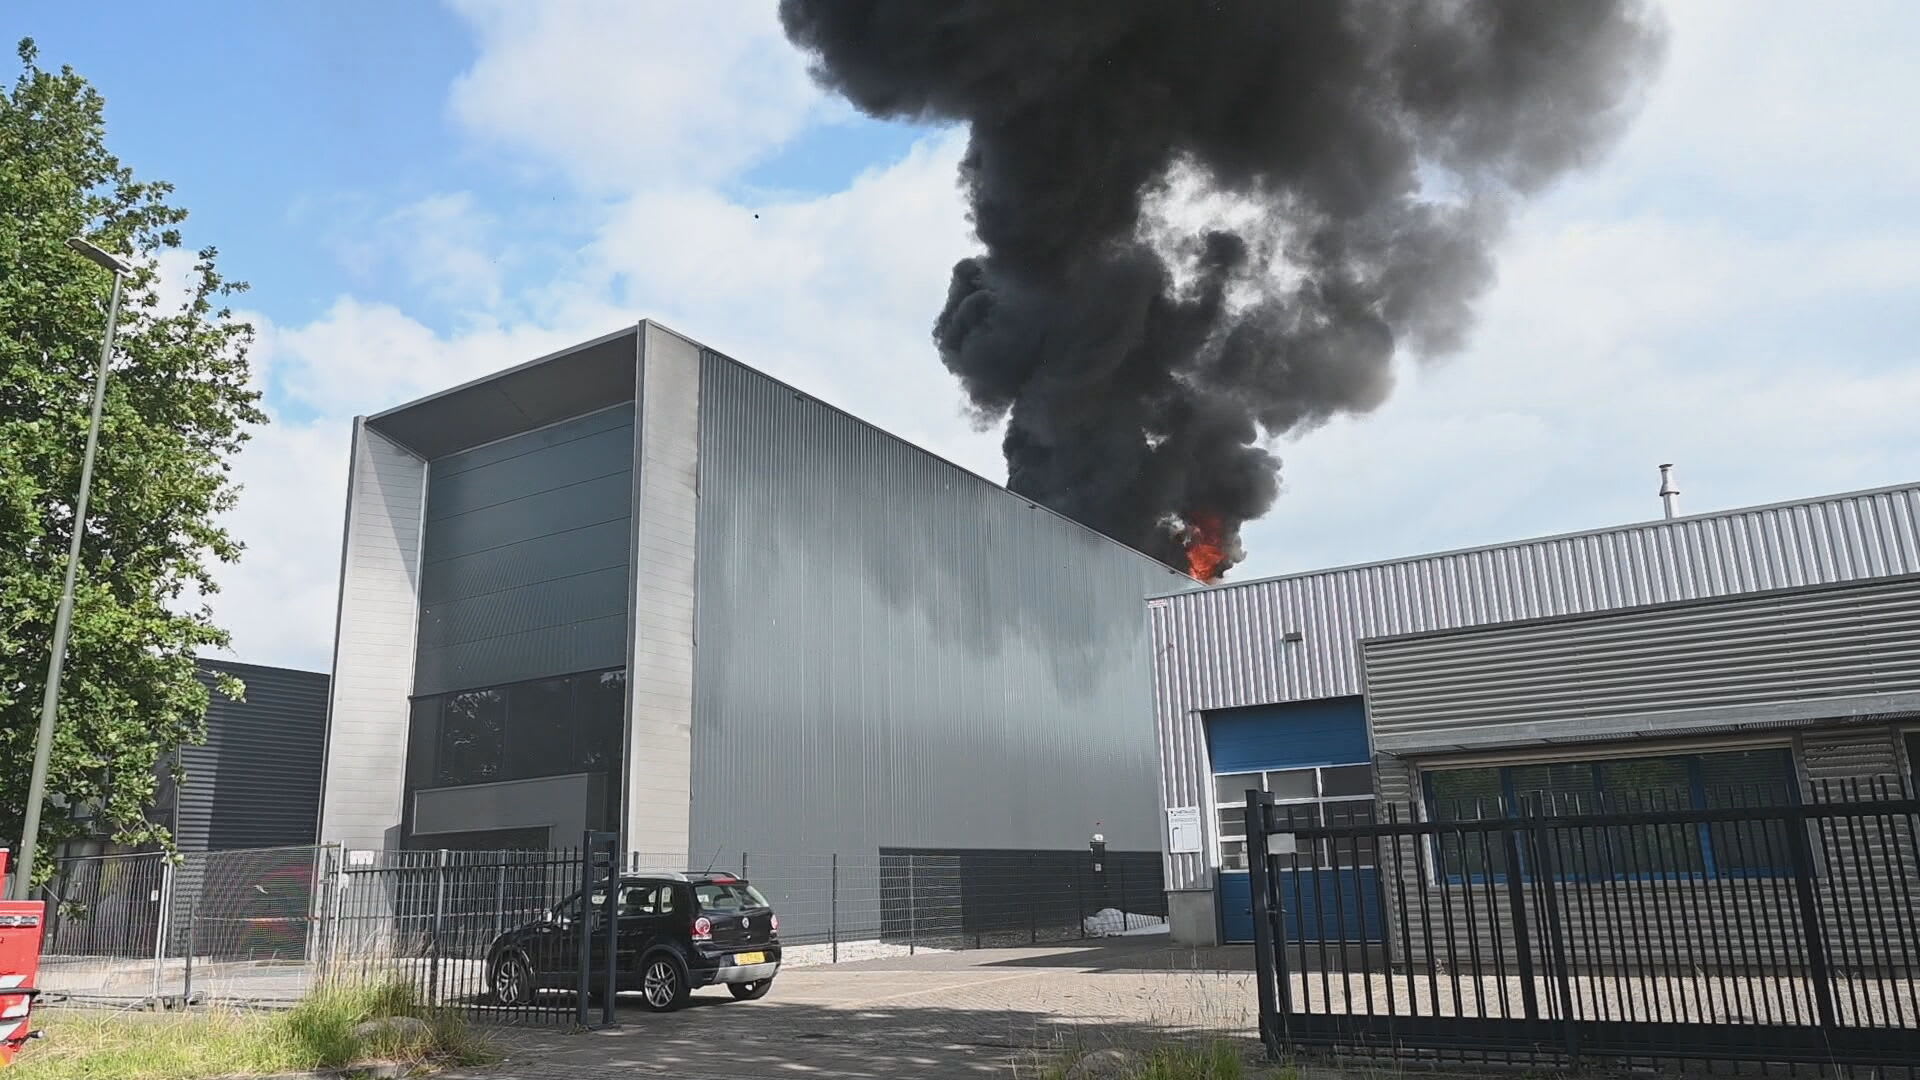 Aanmaakblokjesfabriek Fire Up in lichterlaaie: geen treinen door dikke rookwolk